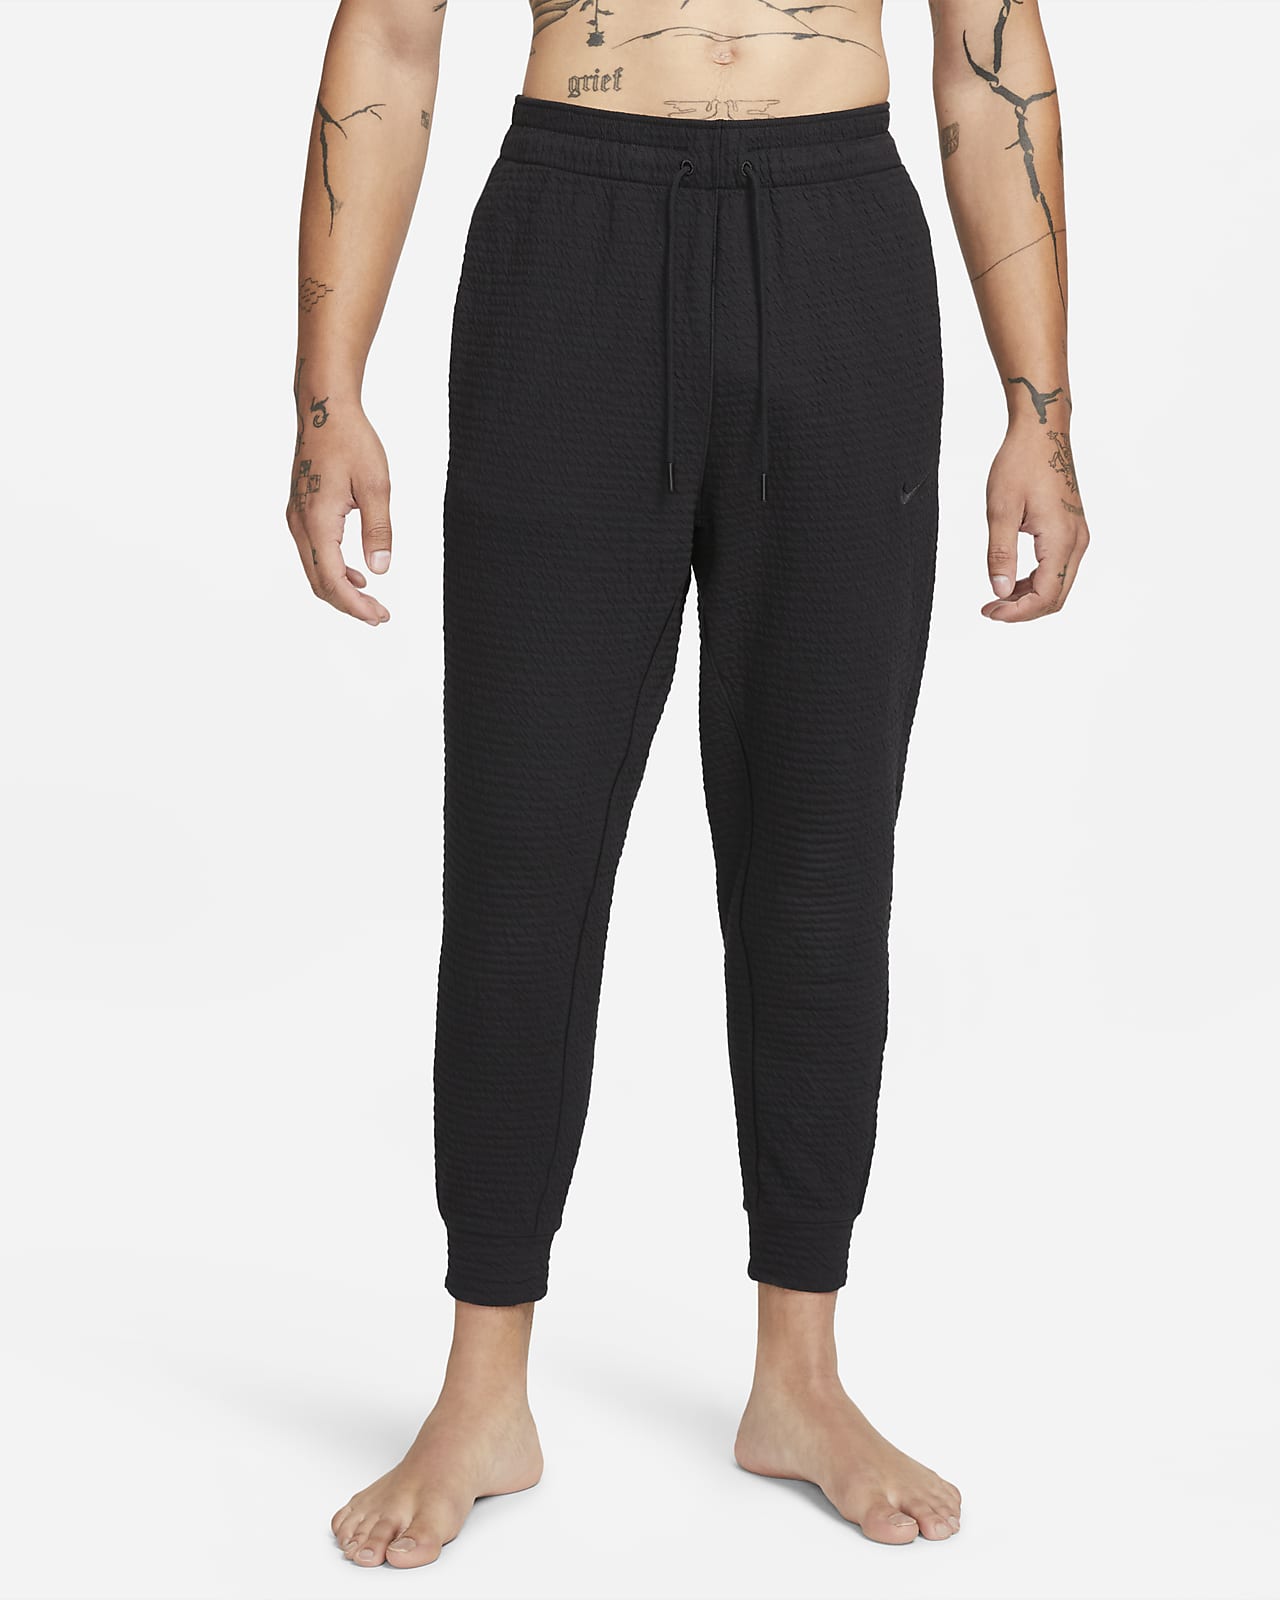 Pantaloni Dri-FIT Nike Yoga – Uomo